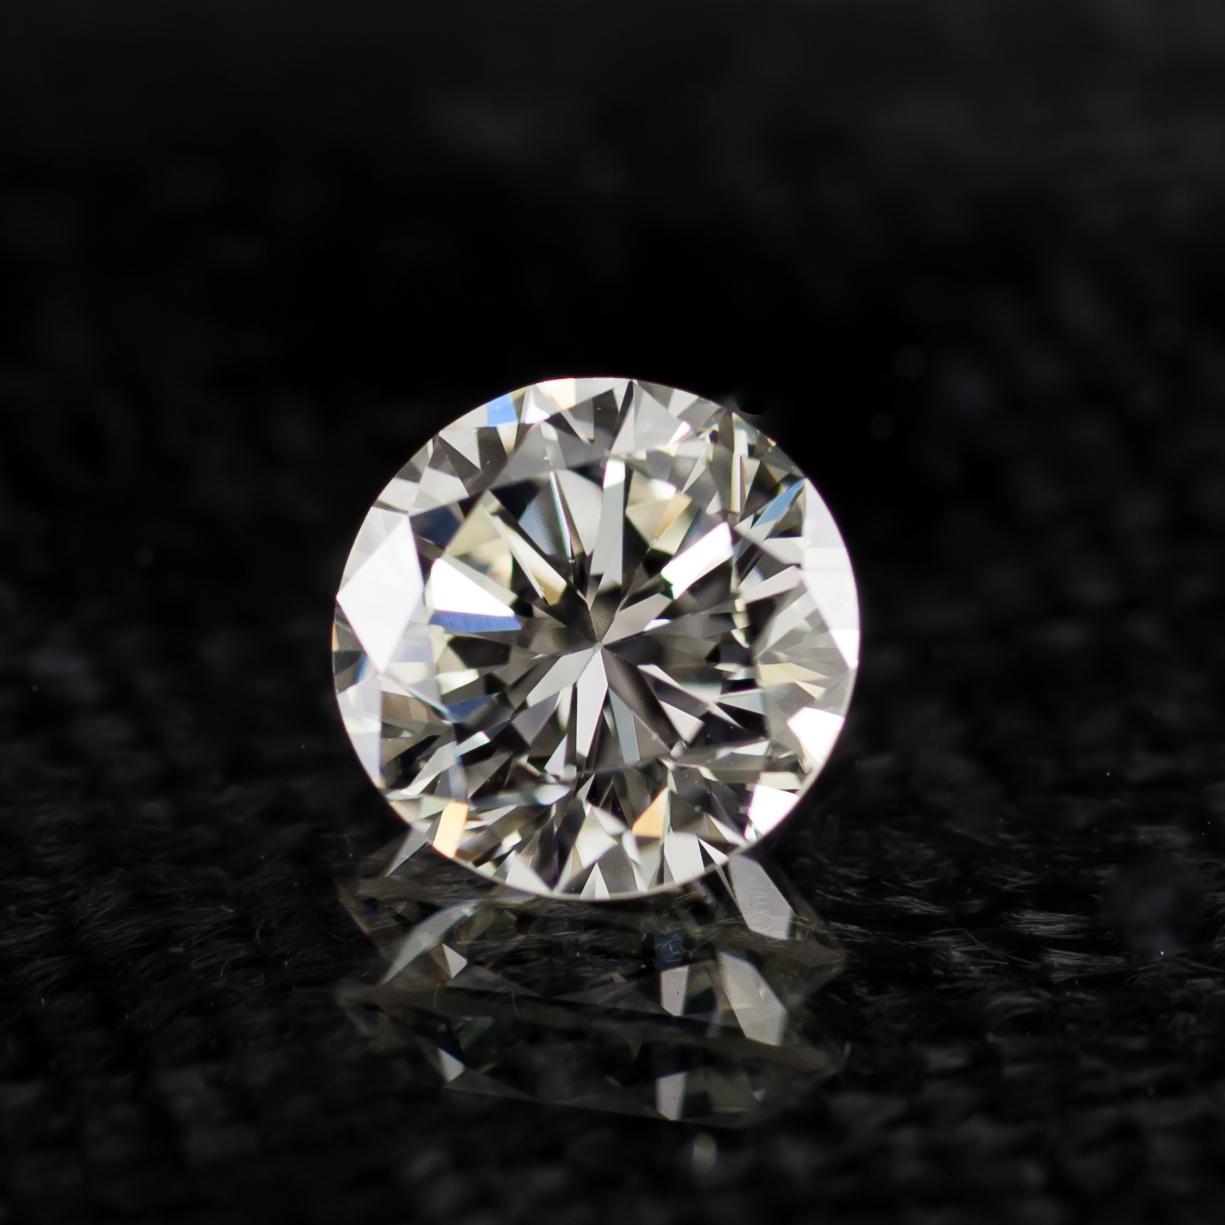 Informations générales sur le diamant
Taille du diamant : Brilliante ronde
Dimensions : 6.67  x  6.63  -  4,17 mm

Résultats de la classification des diamants
Poids en carats : 1,16
Classe de couleur : K
Grade de clarté : VS1

Informations